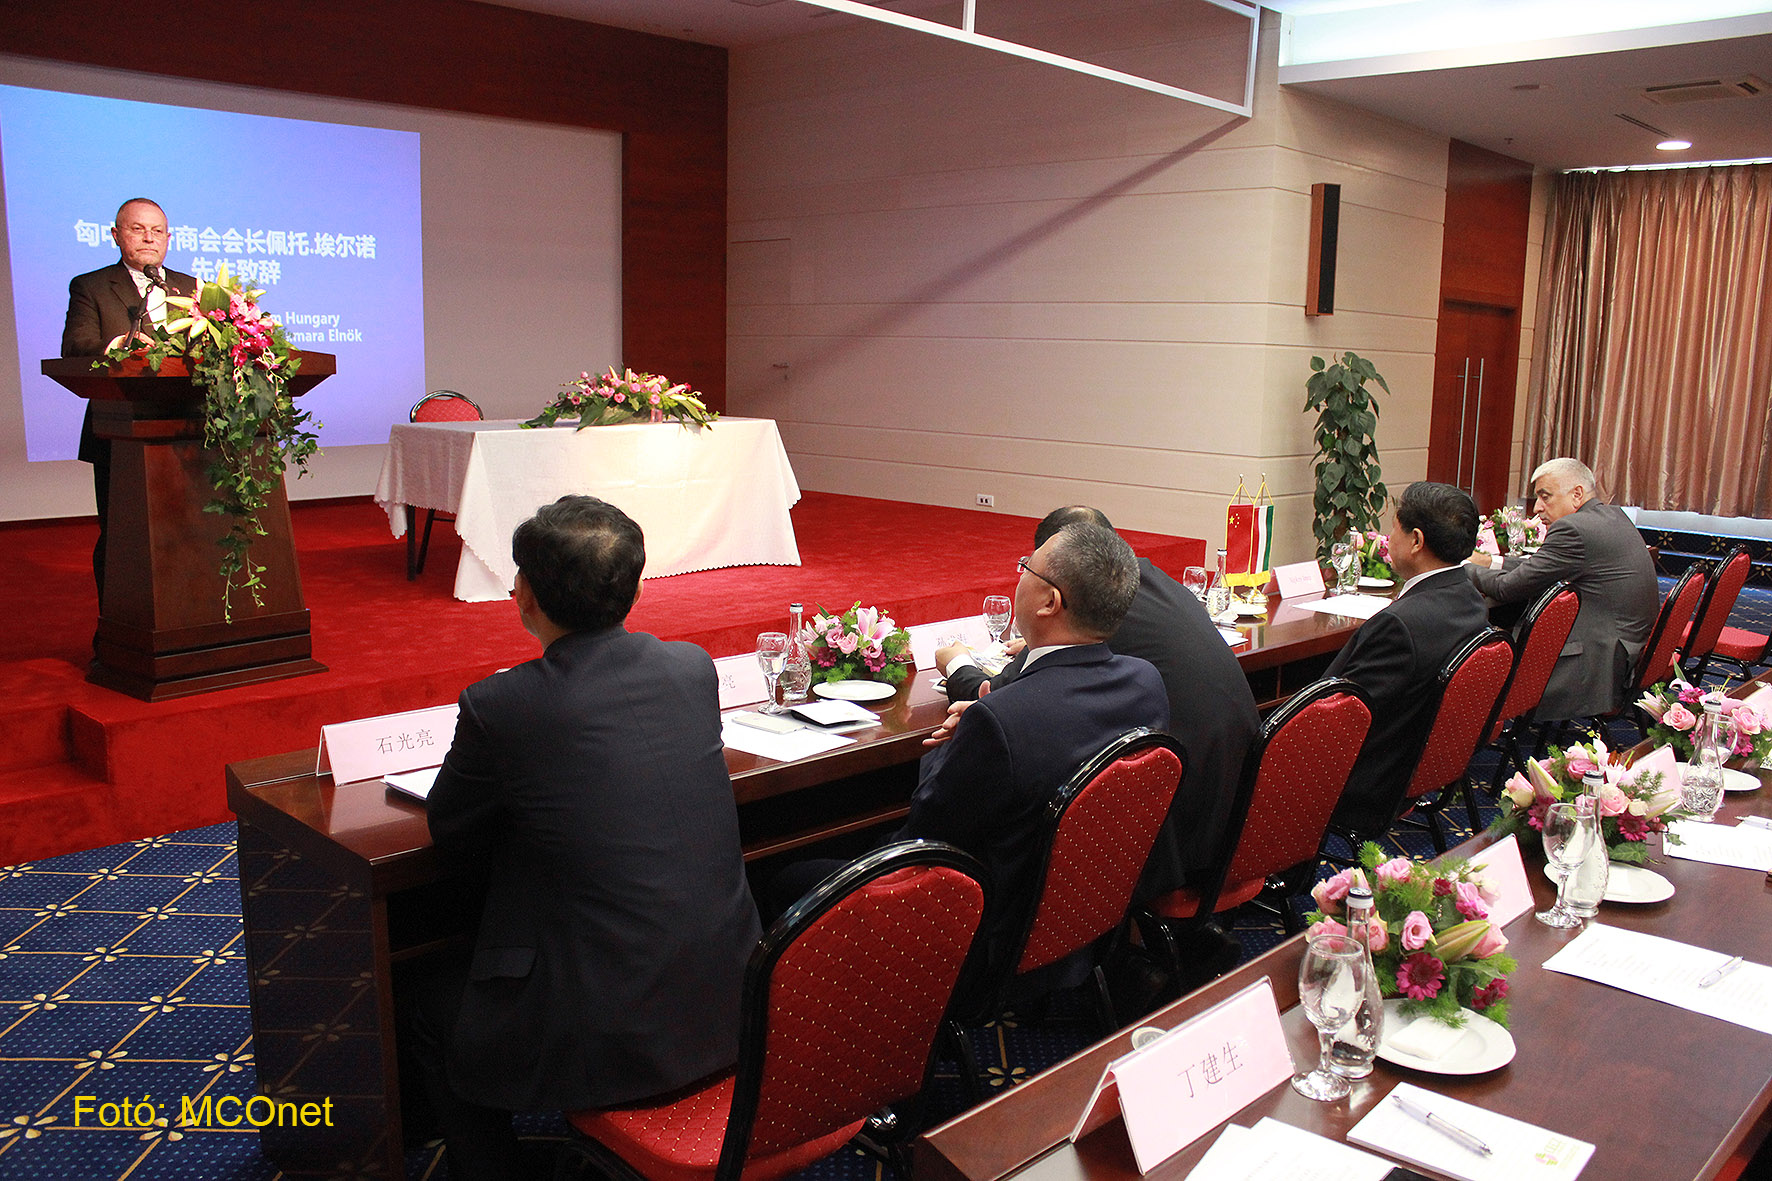 Pető Ernő, a ChinaCham Hungary Magyar-Kínai Gazdasági Kamara elnöke a Shandong-Magyarország Befektetési és Kereskedelmfejlesztési Konferencián